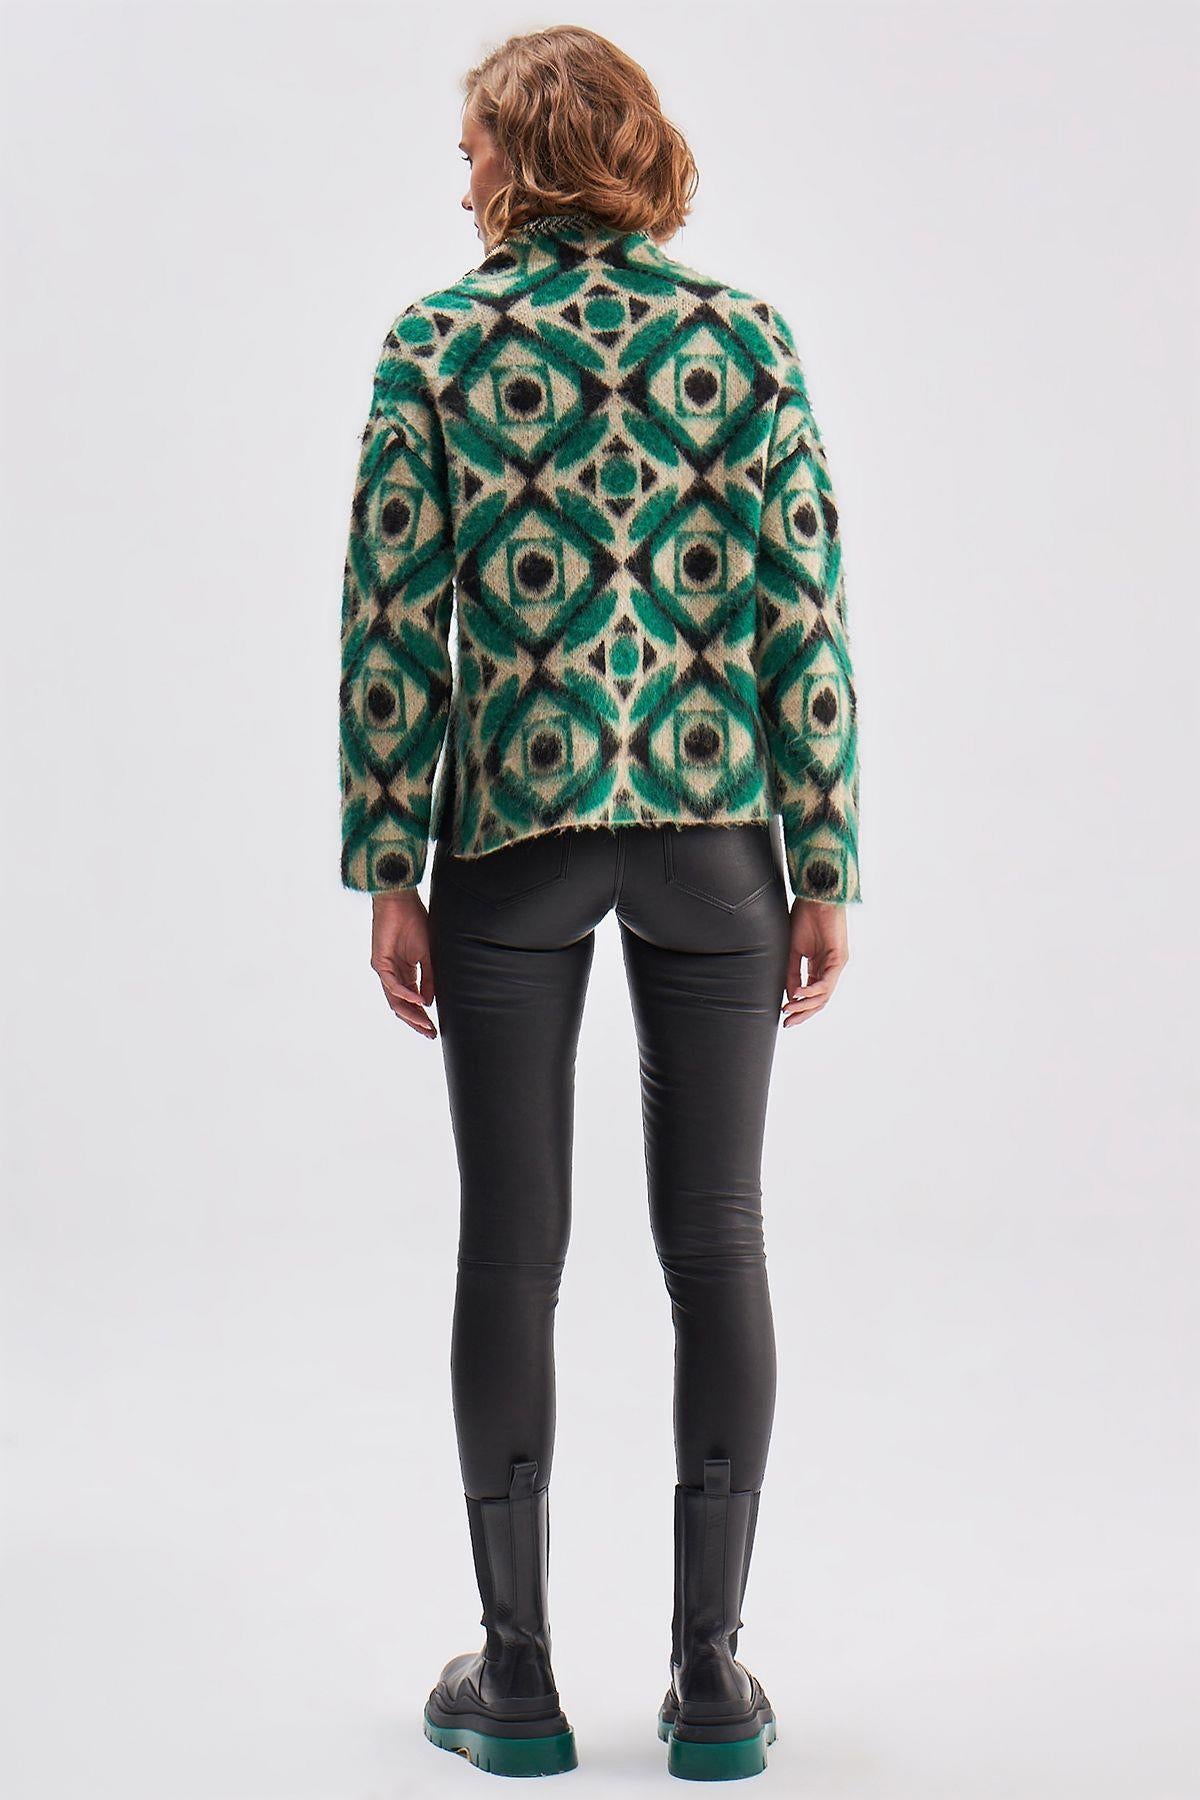 Zipper Detailed Geometric Patterned Knitwear Sweater